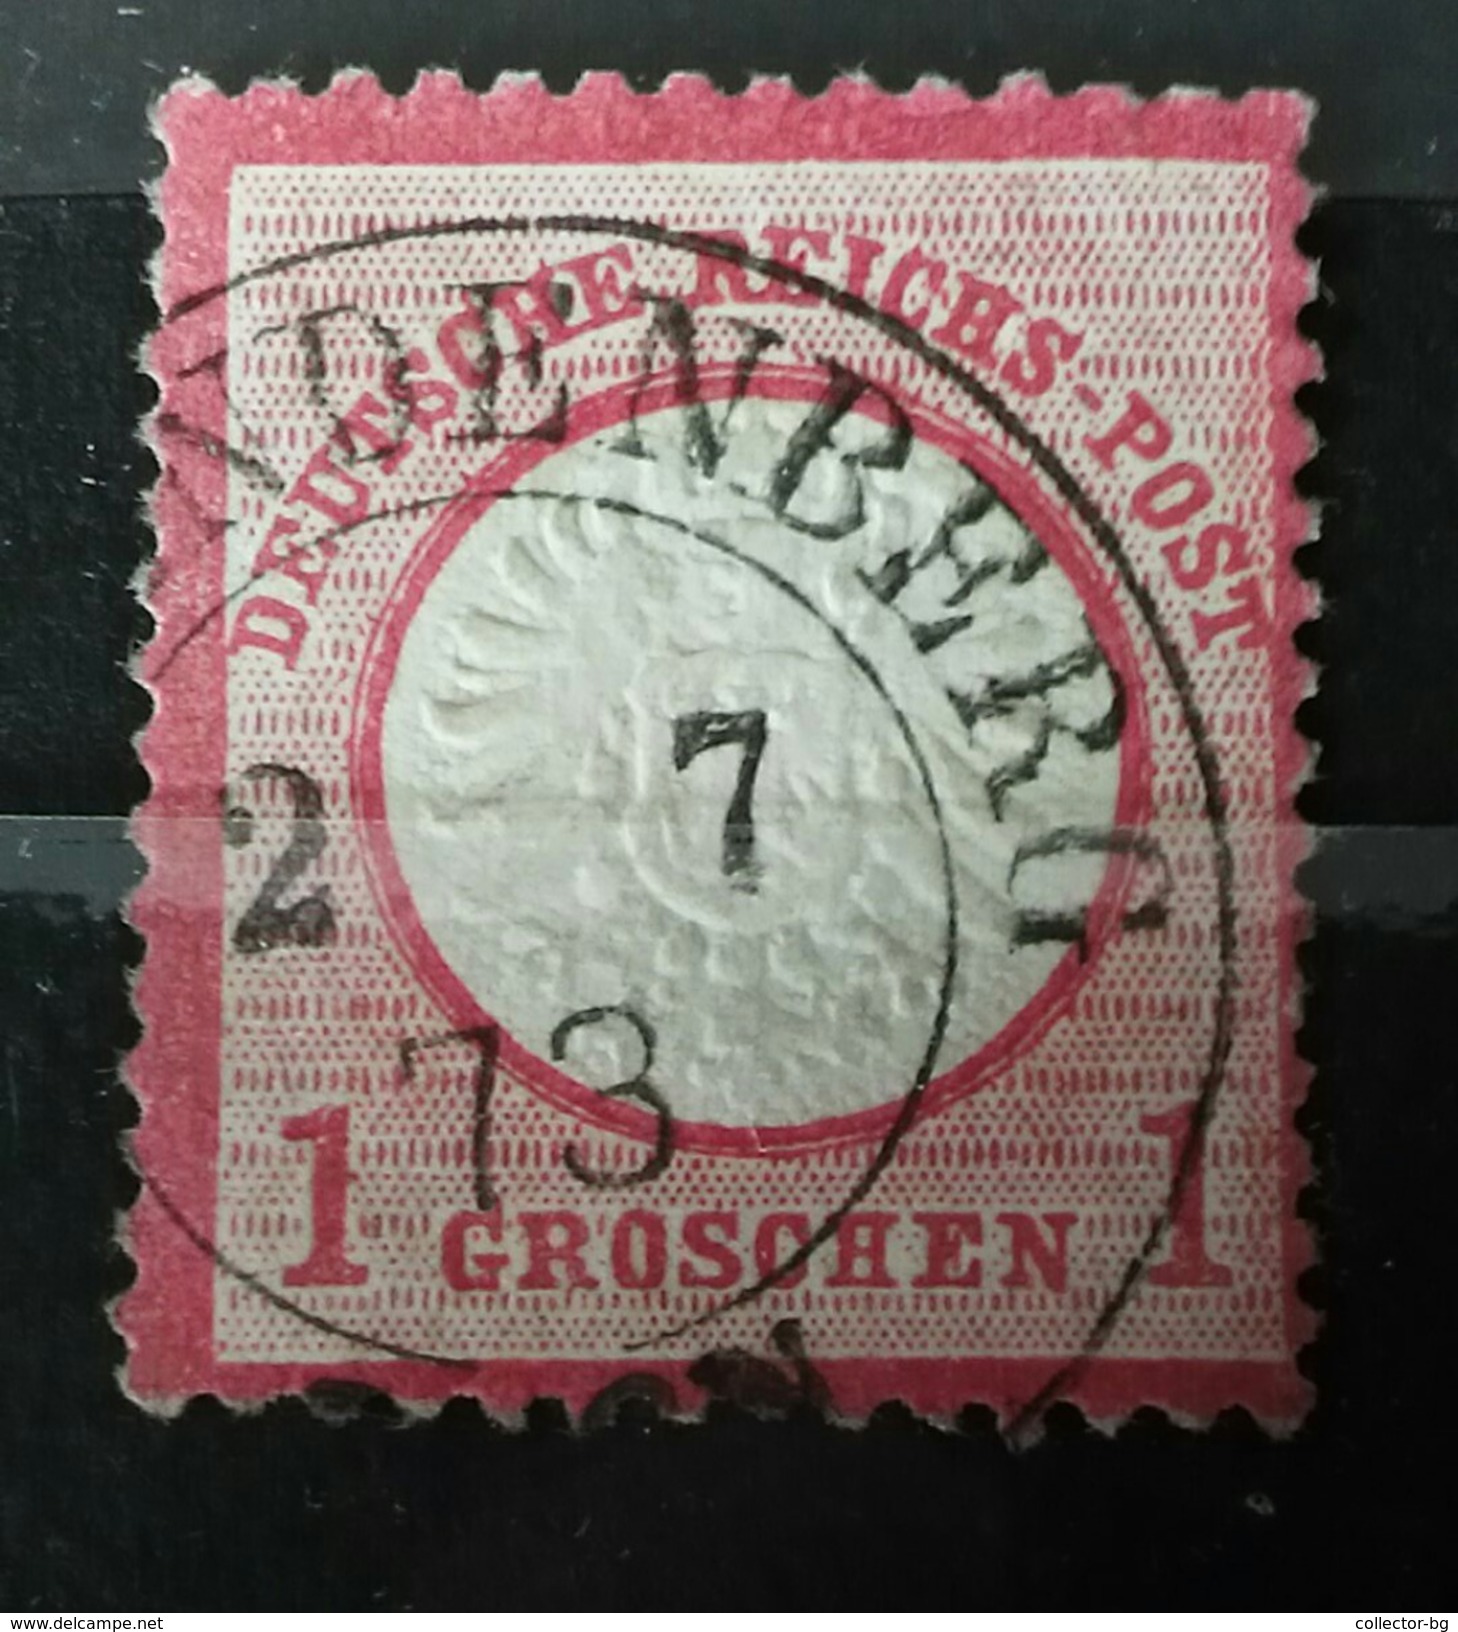 ULTRA RARE 1 GROSCHEN DEUTSCHE REICHS POST GERMANY EMPIRE 2.7.1873 MINT/UNUSED STAMP TIMBRE - Gebraucht